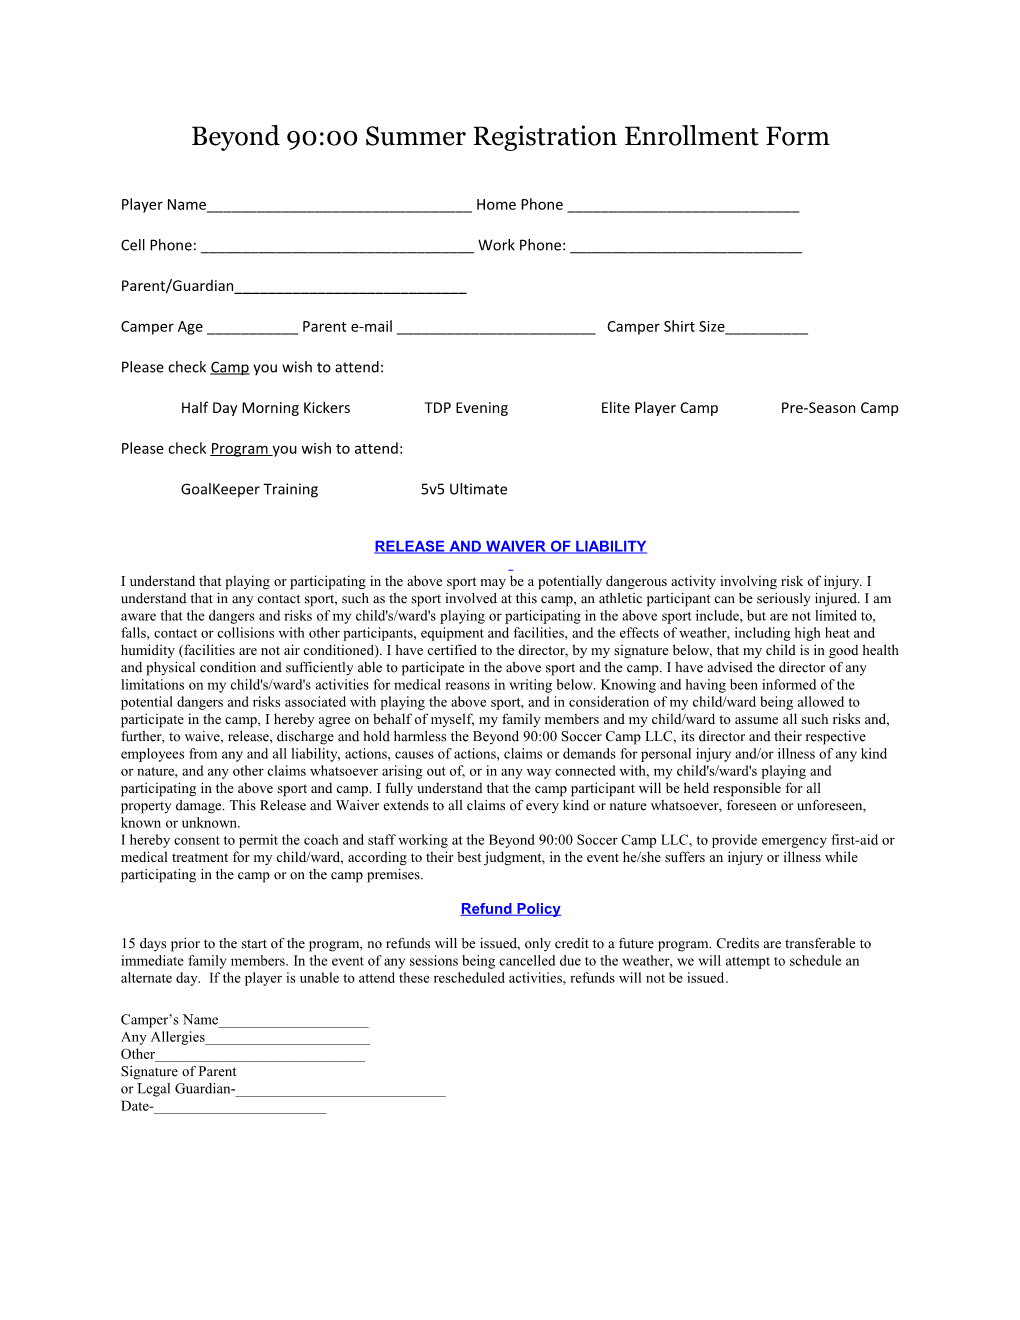 Beyond 90:00 Summer Registration Enrollment Form